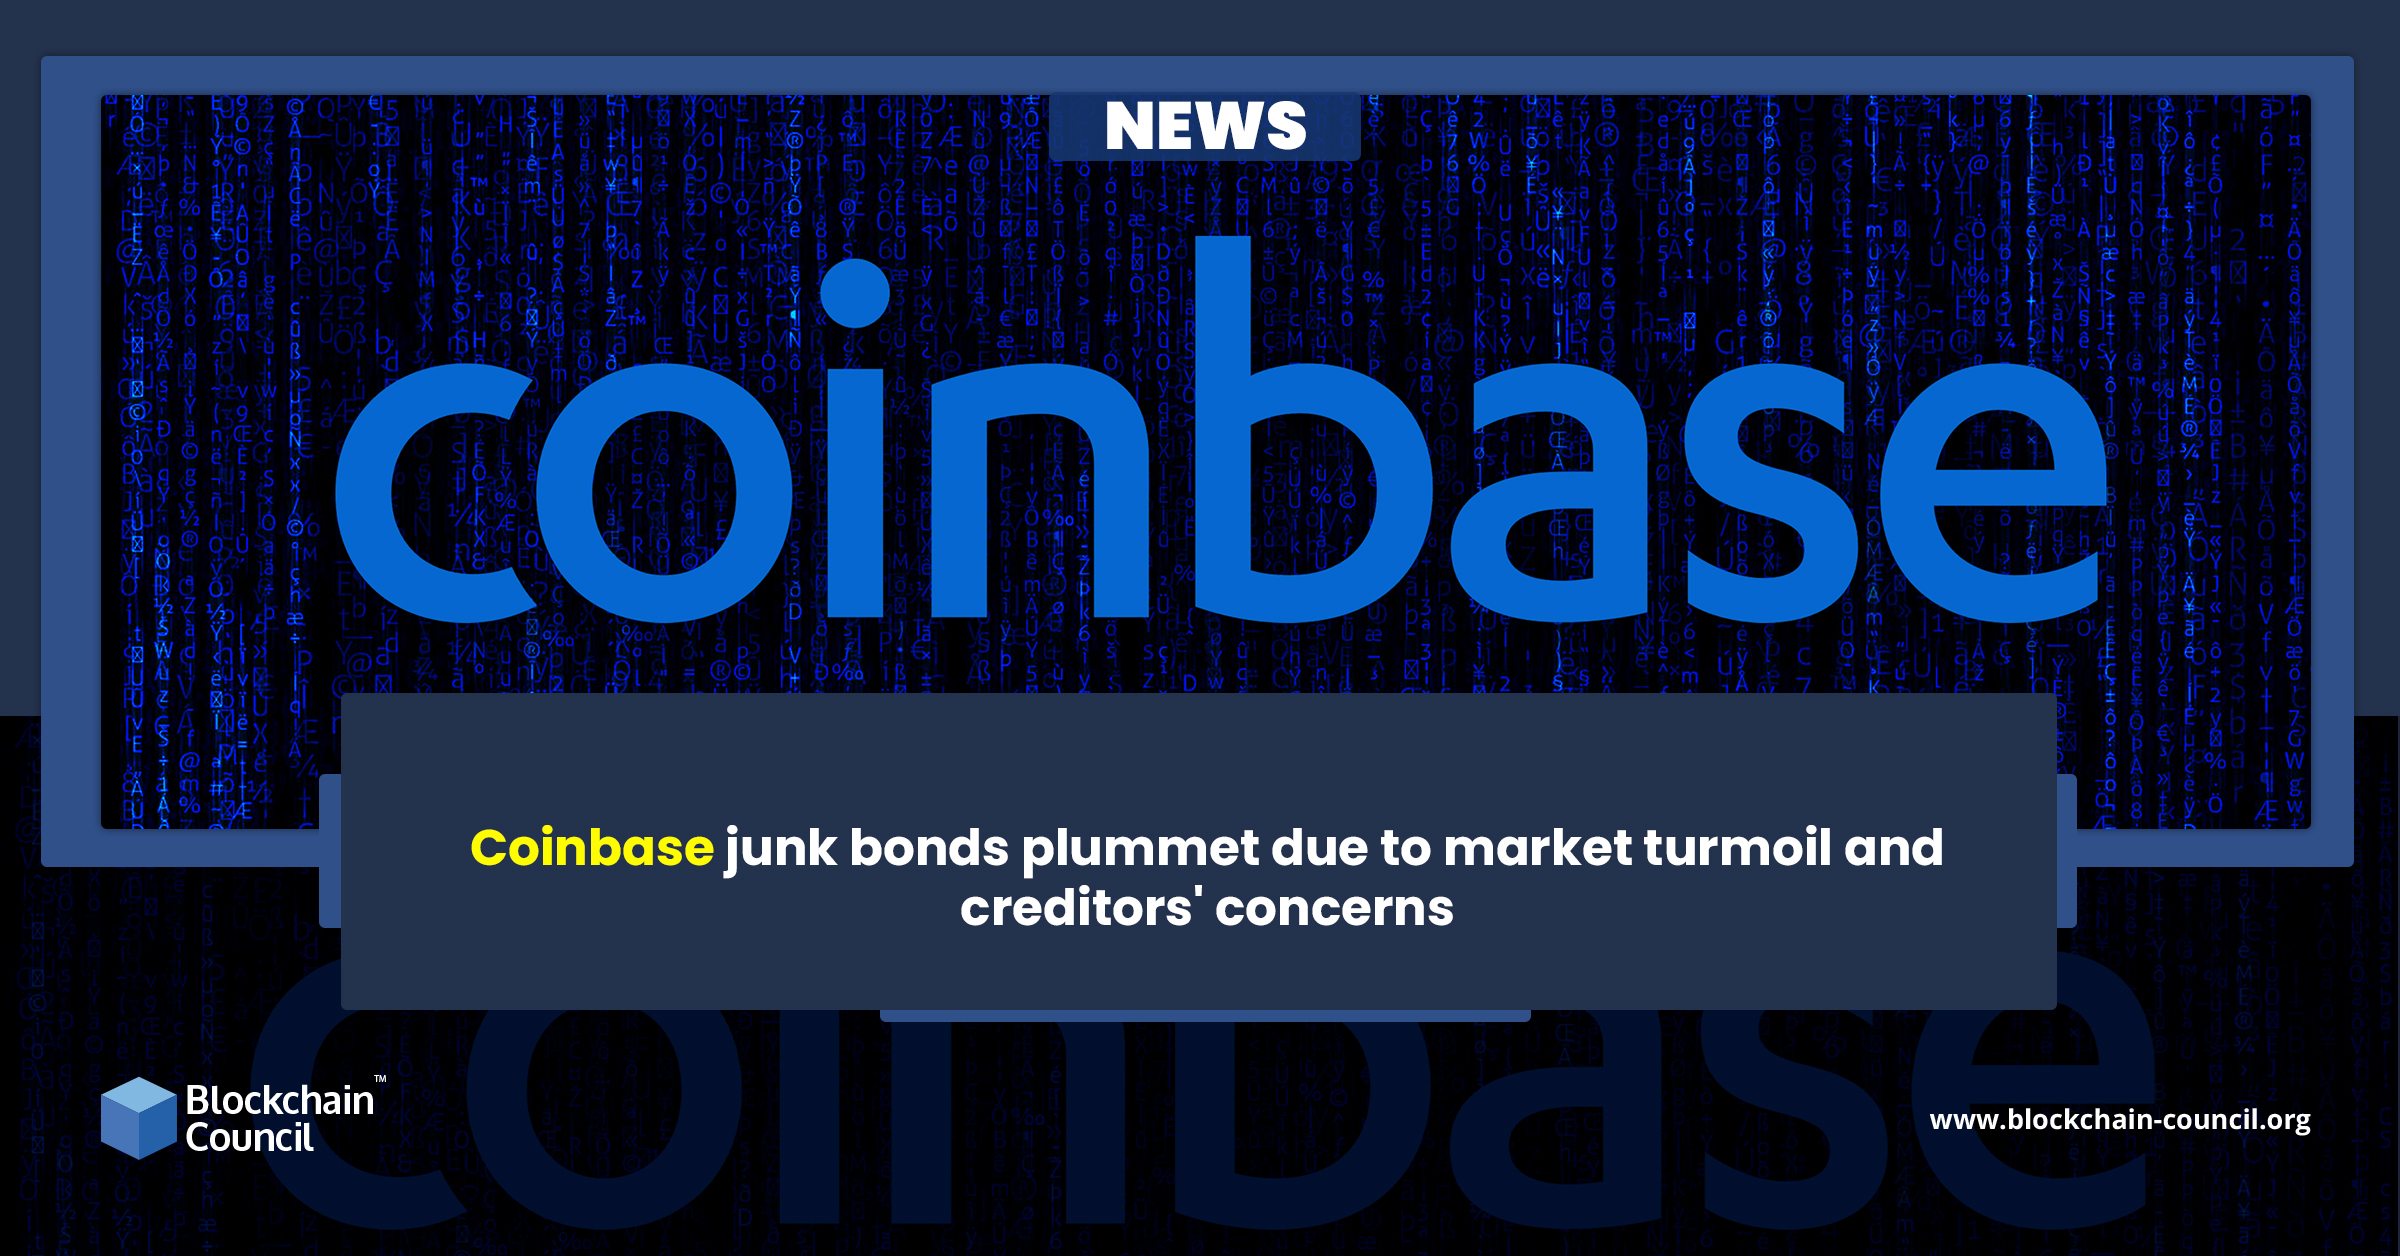 Coinbase junk bonds plummet due to market turmoil and creditors' concerns